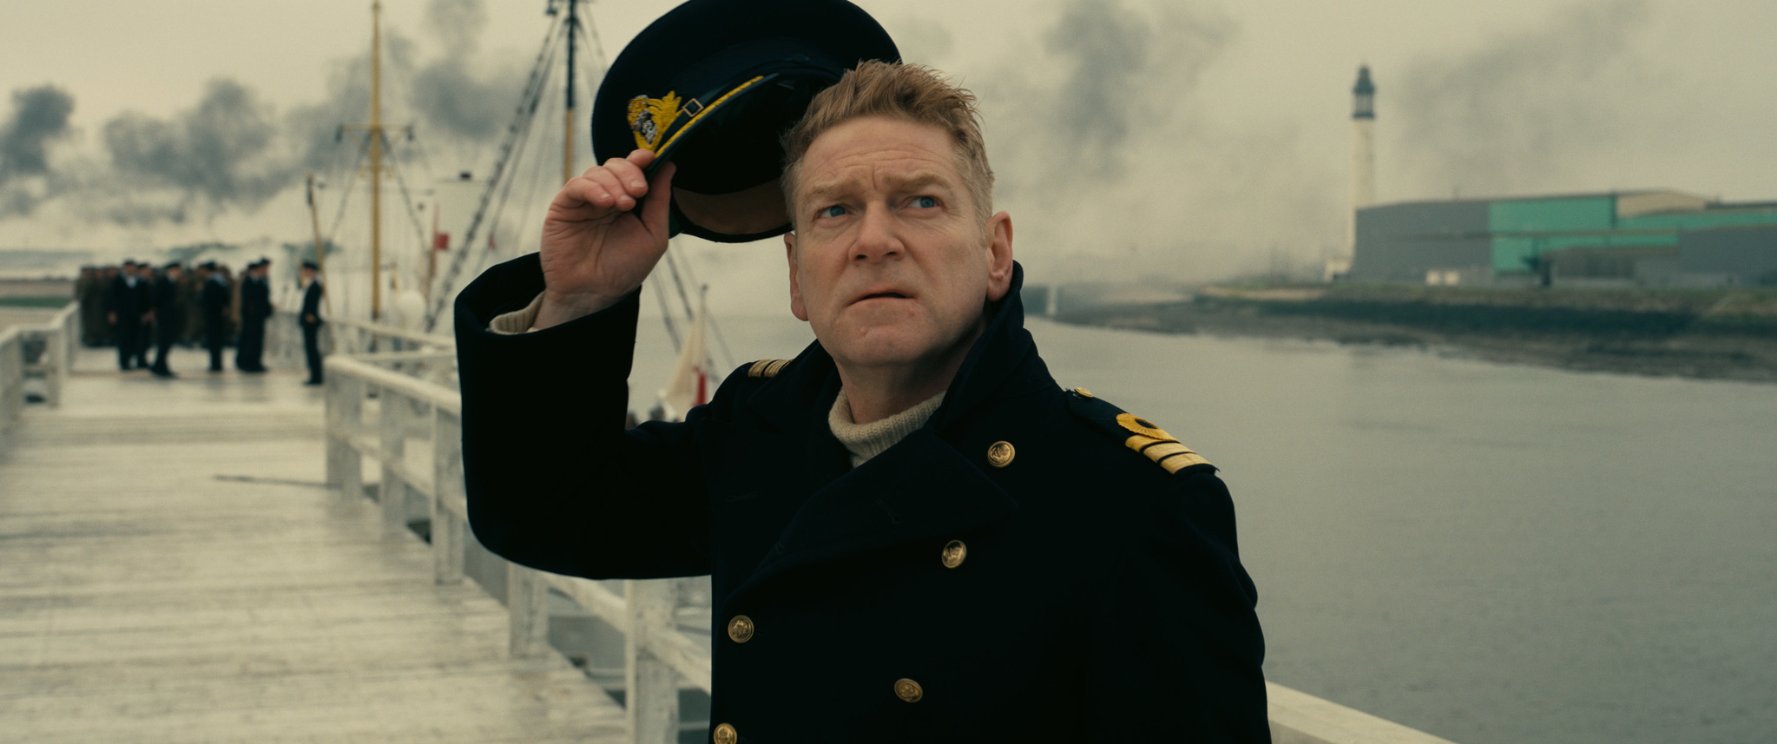 Commander Bolton